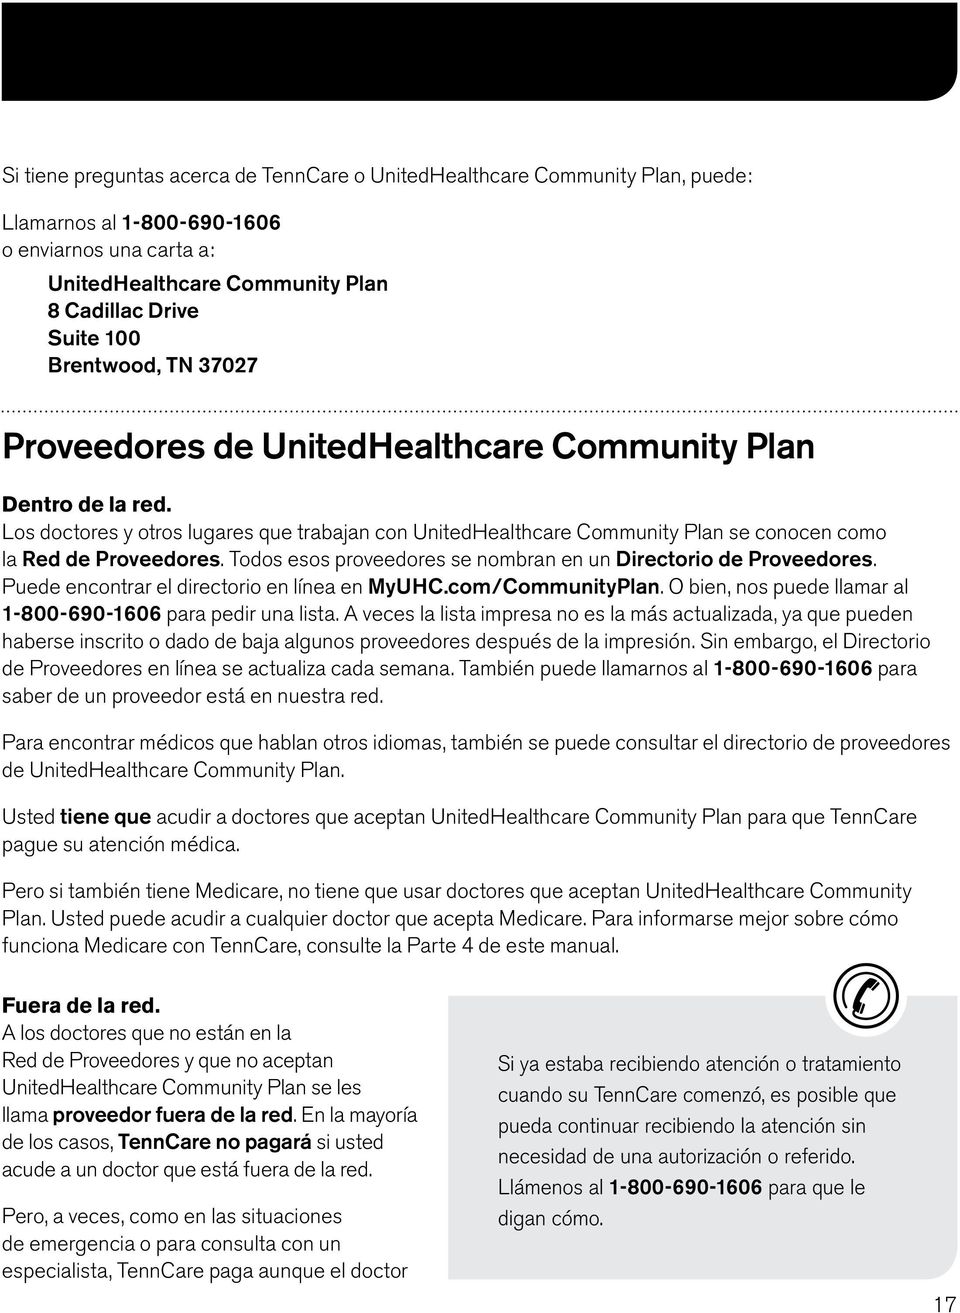 Los doctores y otros lugares que trabajan con UnitedHealthcare Community Plan se conocen como la Red de Proveedores. Todos esos proveedores se nombran en un Directorio de Proveedores.